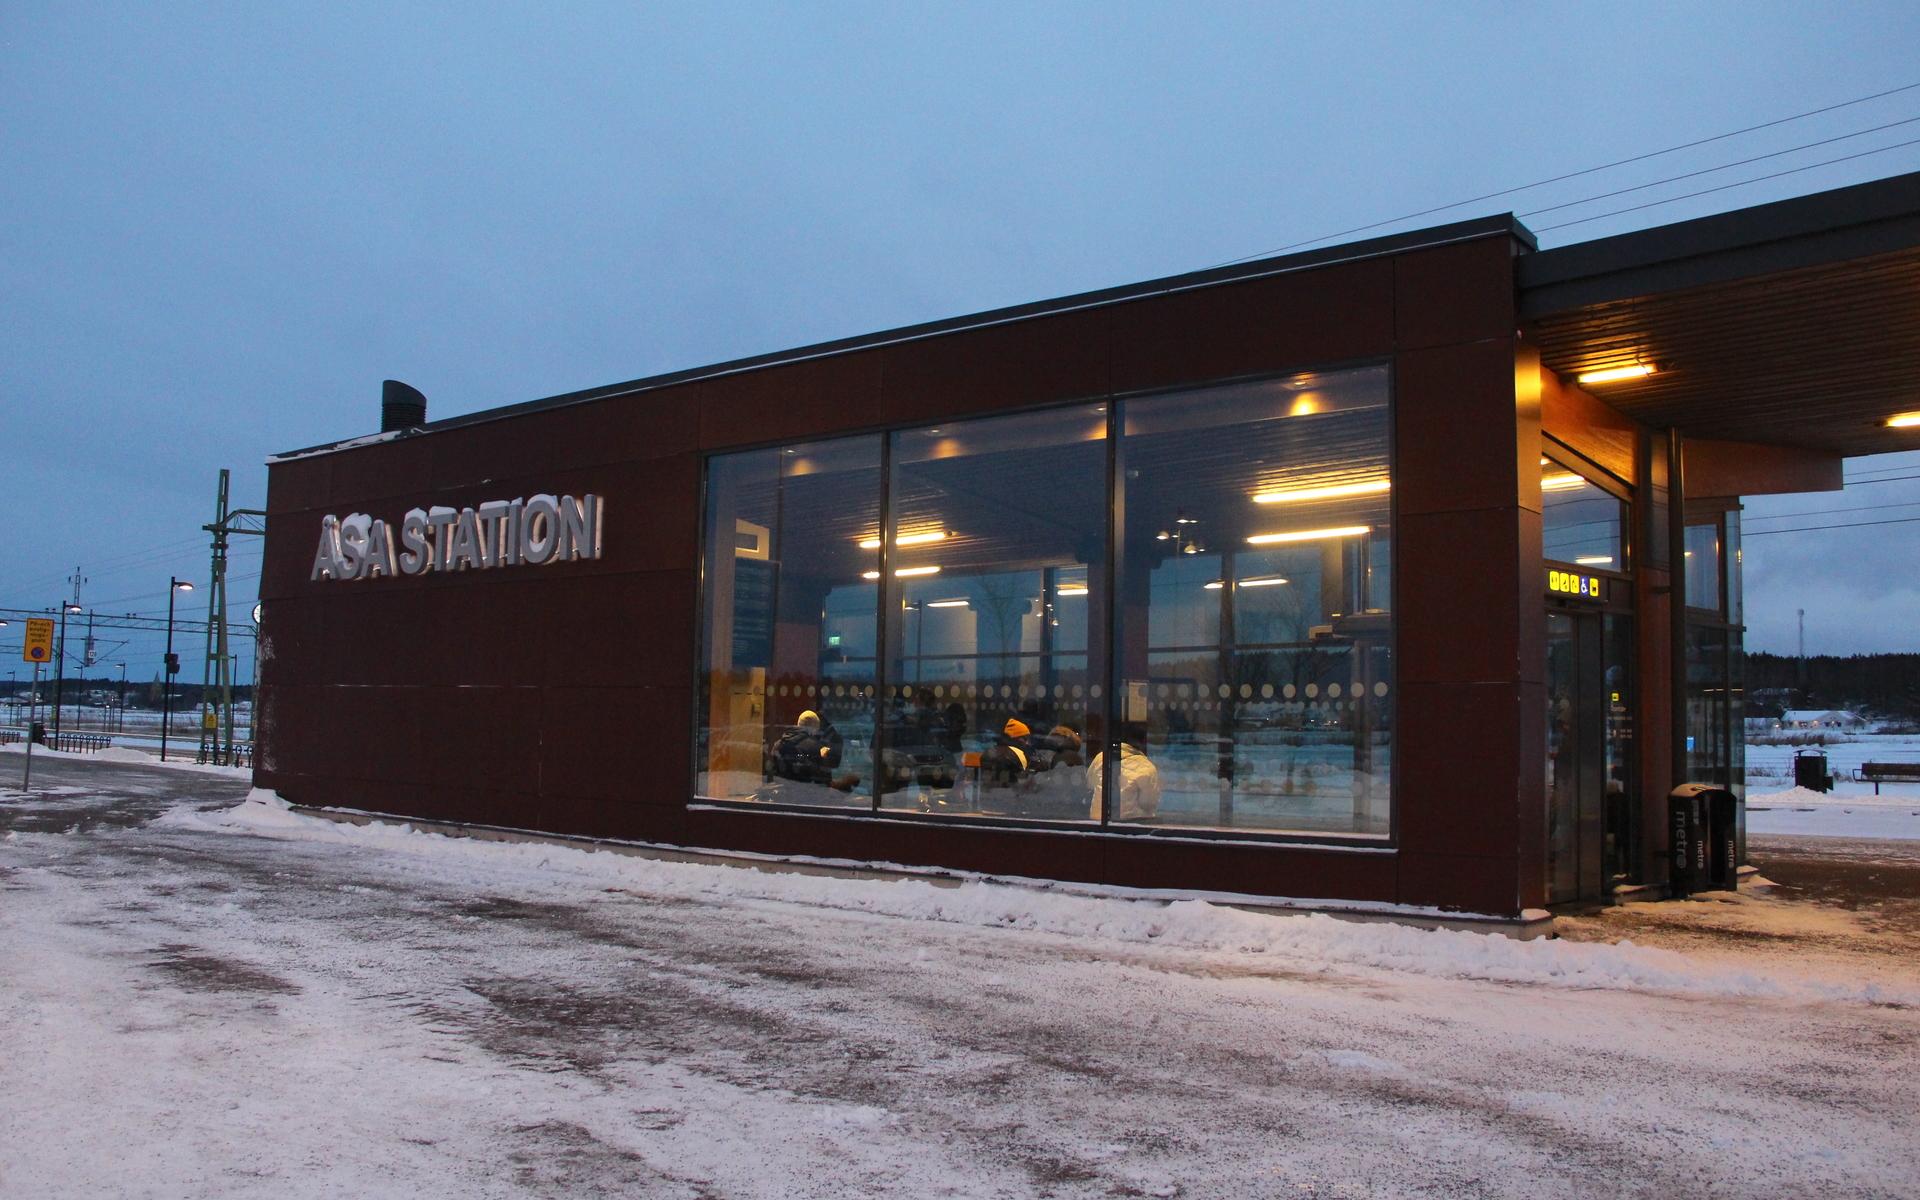 Åsa station ligger utanför centrala Åsa och de flesta kommer dit med bil eller anslutningsbussar. 